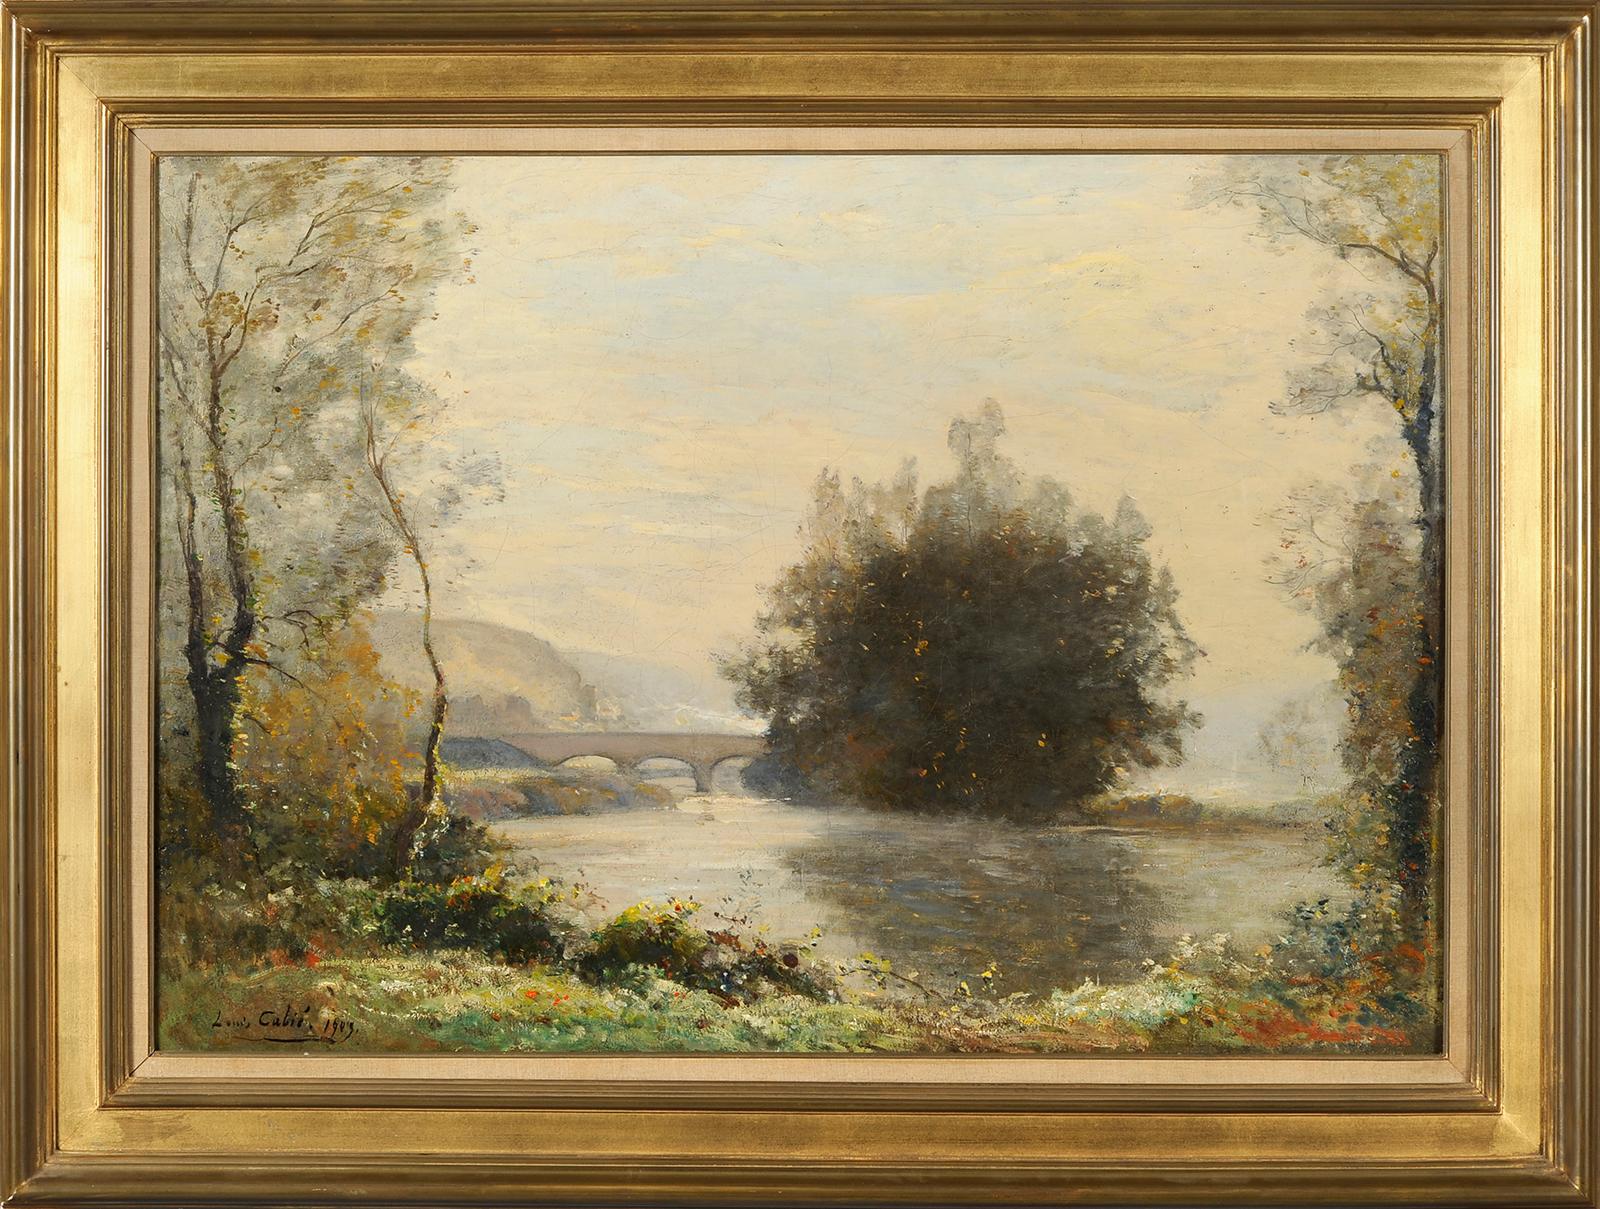 Louis Cabié (1853-1939) - The bridge at Les Eyzies - Dordogne - Painting by Louis-Alexandre Cabié